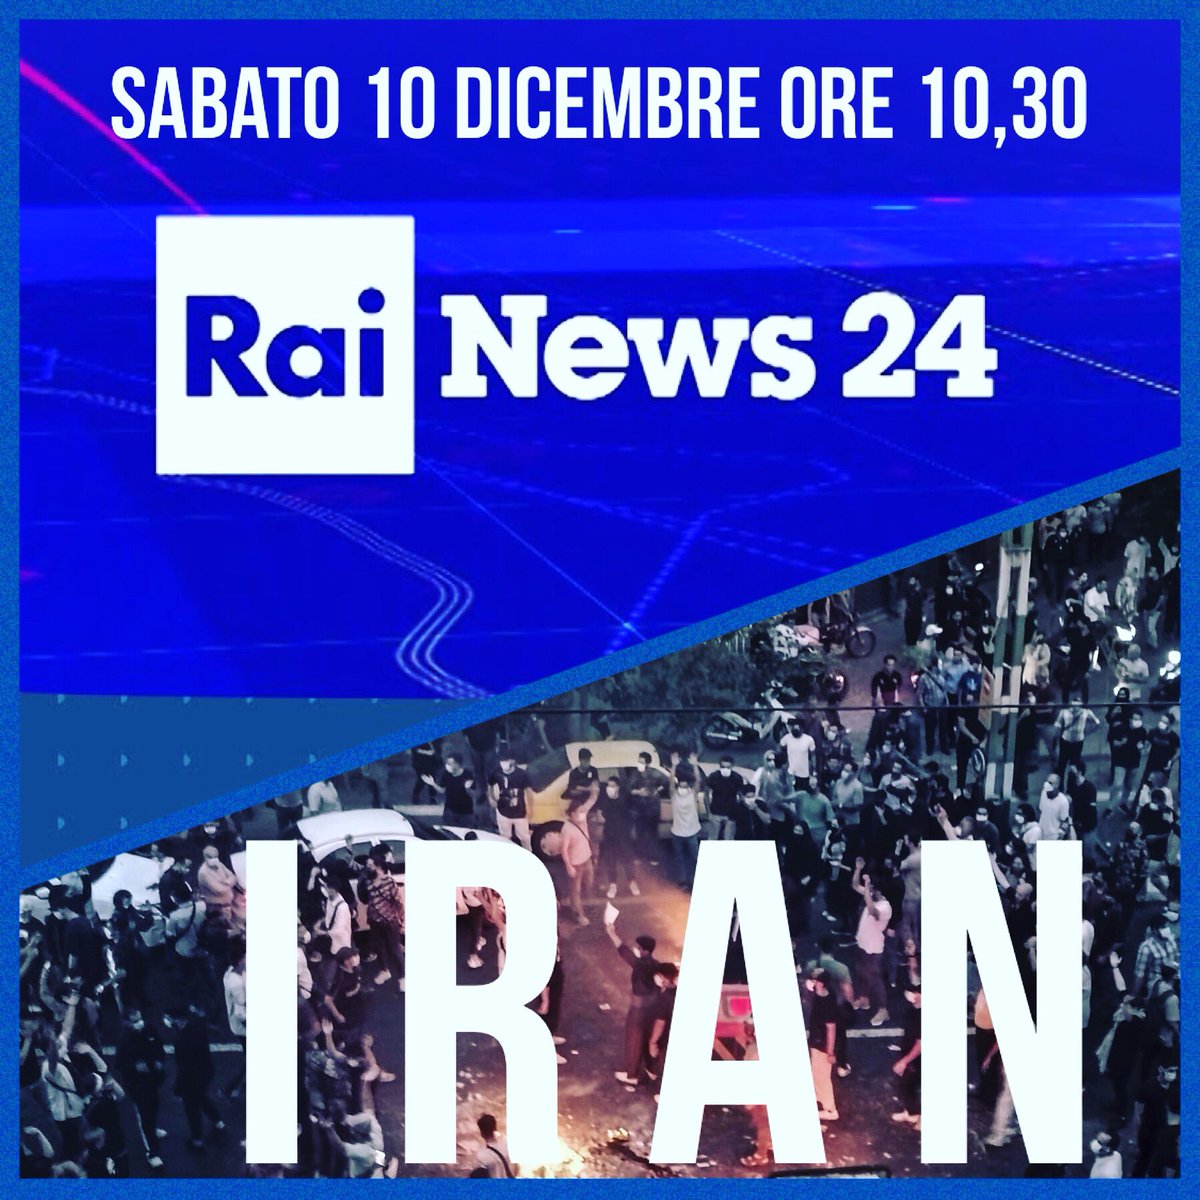 Sabato 10 Dicembre è la Giornata Mondiale dei Diritti Umani. 
Alle 10,30 a Rainews24 parliamo di #Iran  

#IranProtests2022 #IranRevolution2022 #MahsaAmini #stopiranexecutions #giornatamondialedirittiumani